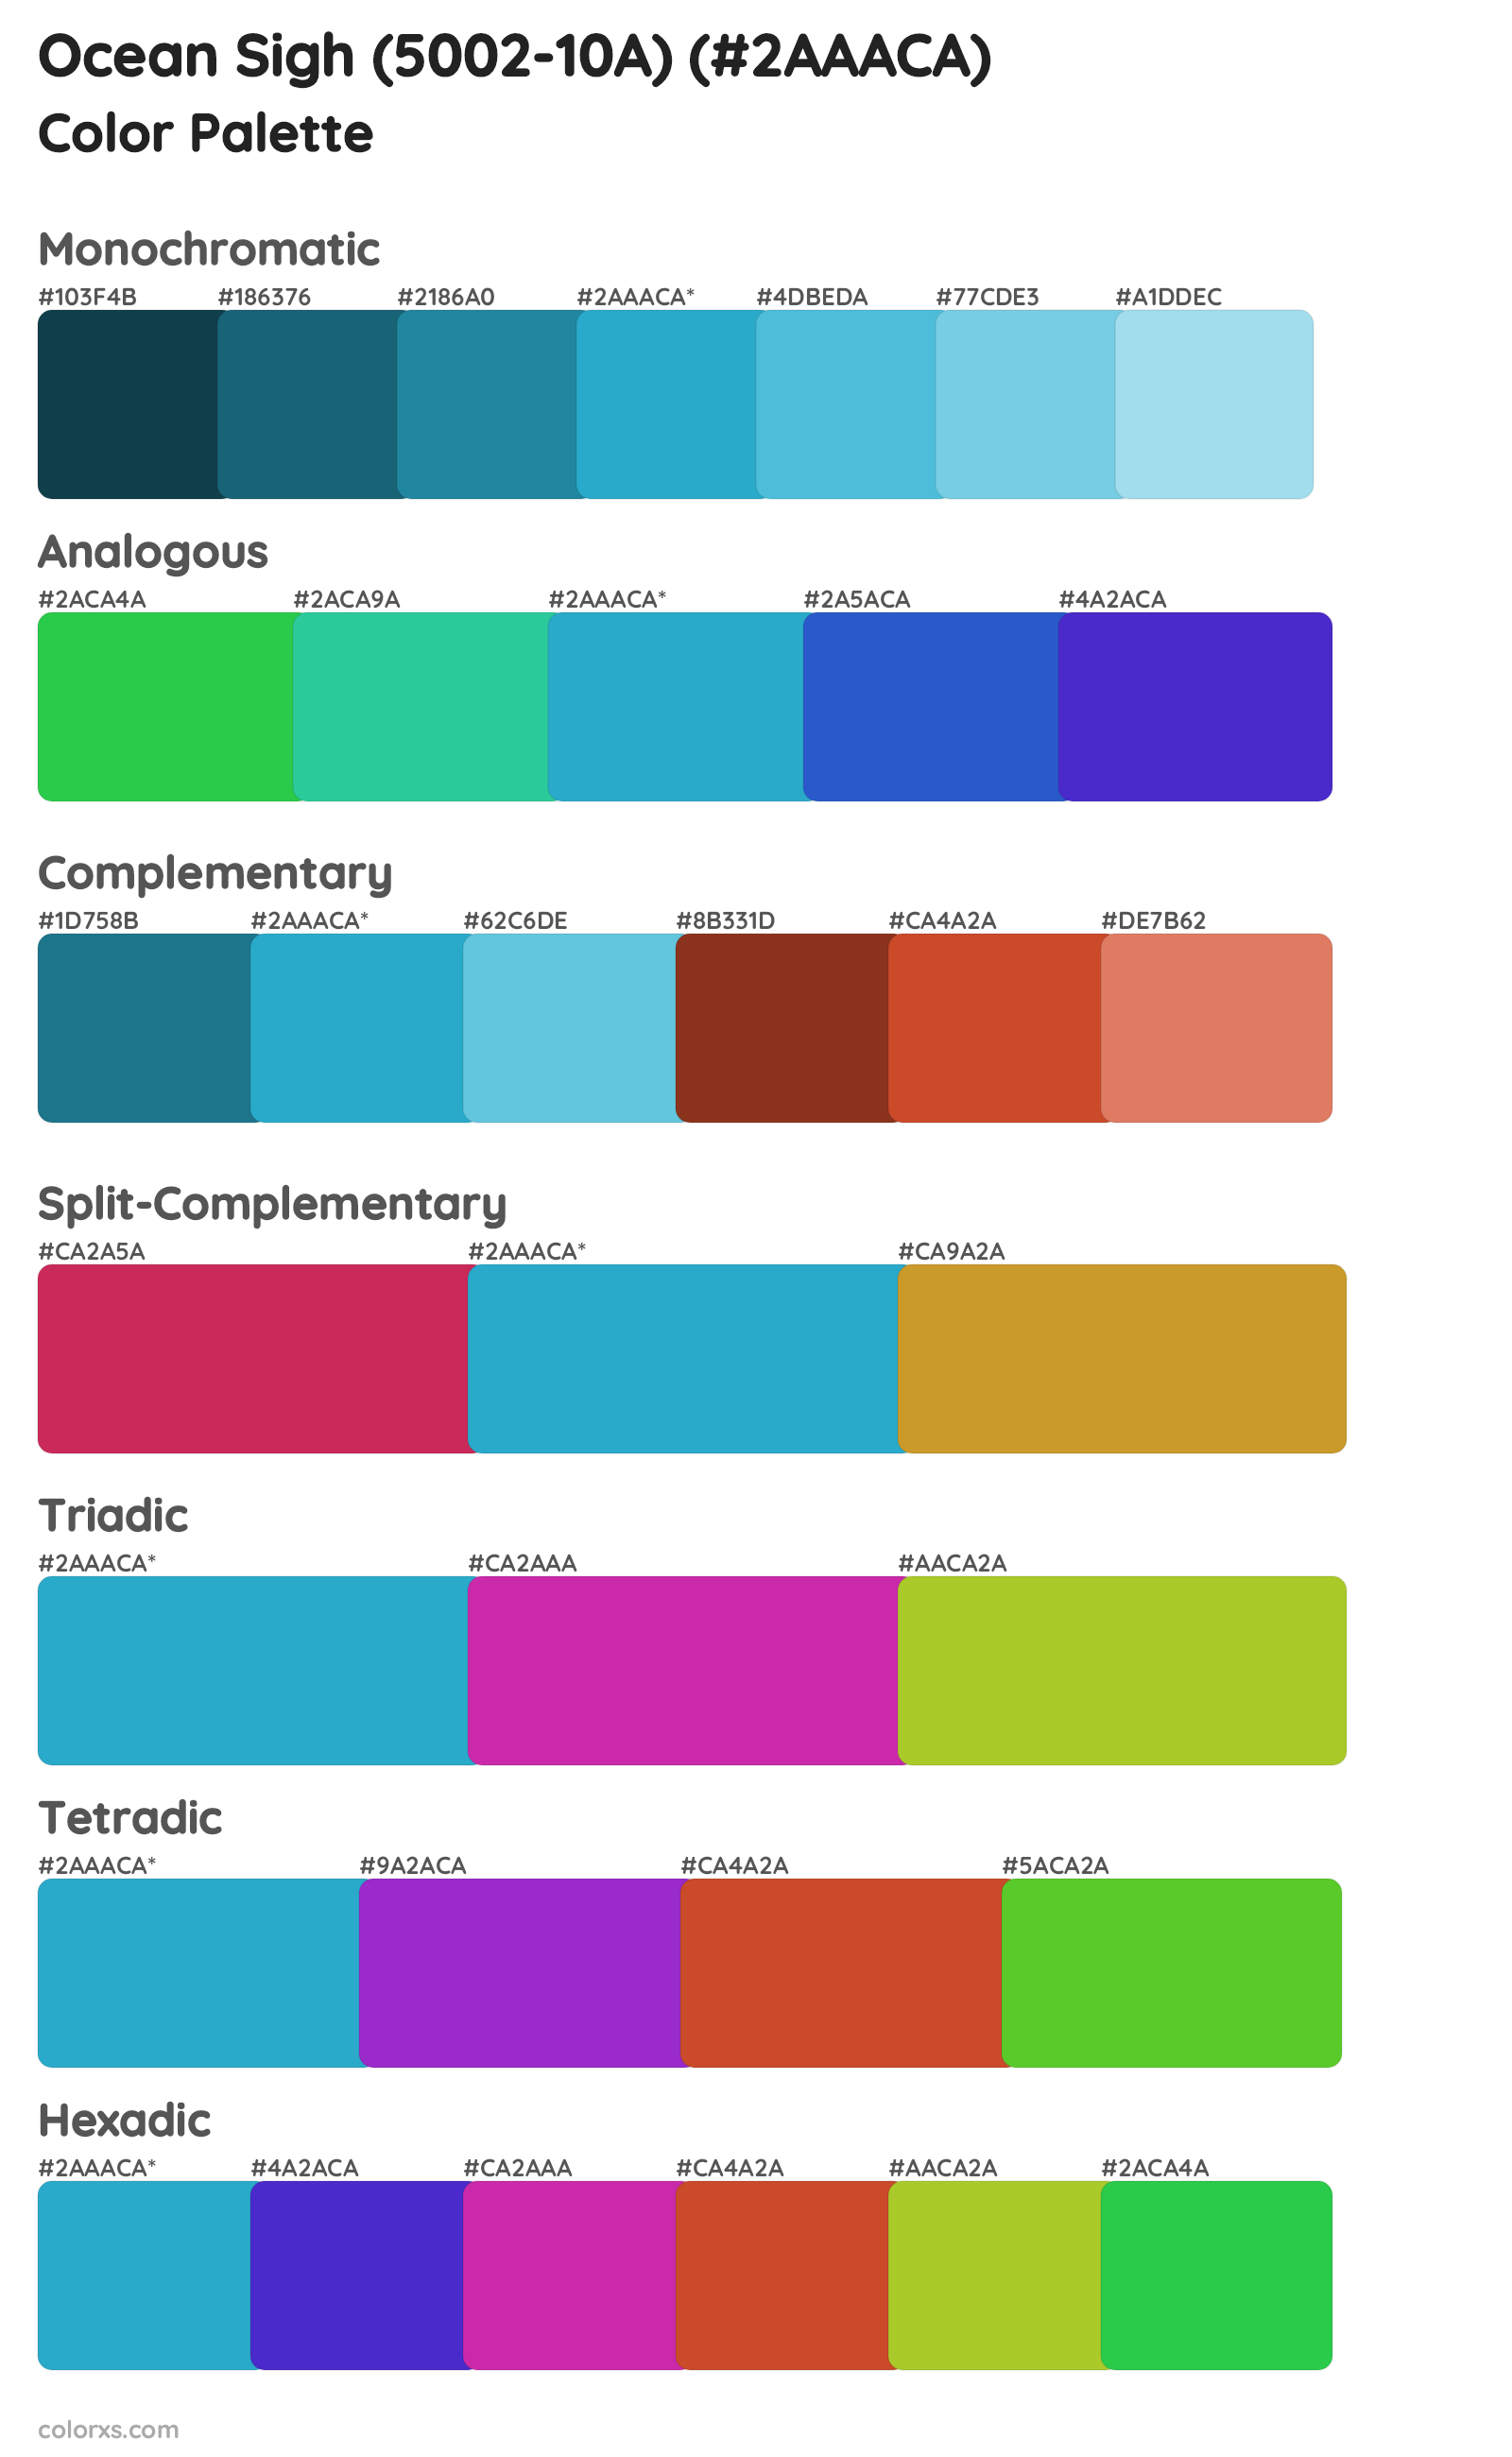 Ocean Sigh (5002-10A) Color Scheme Palettes